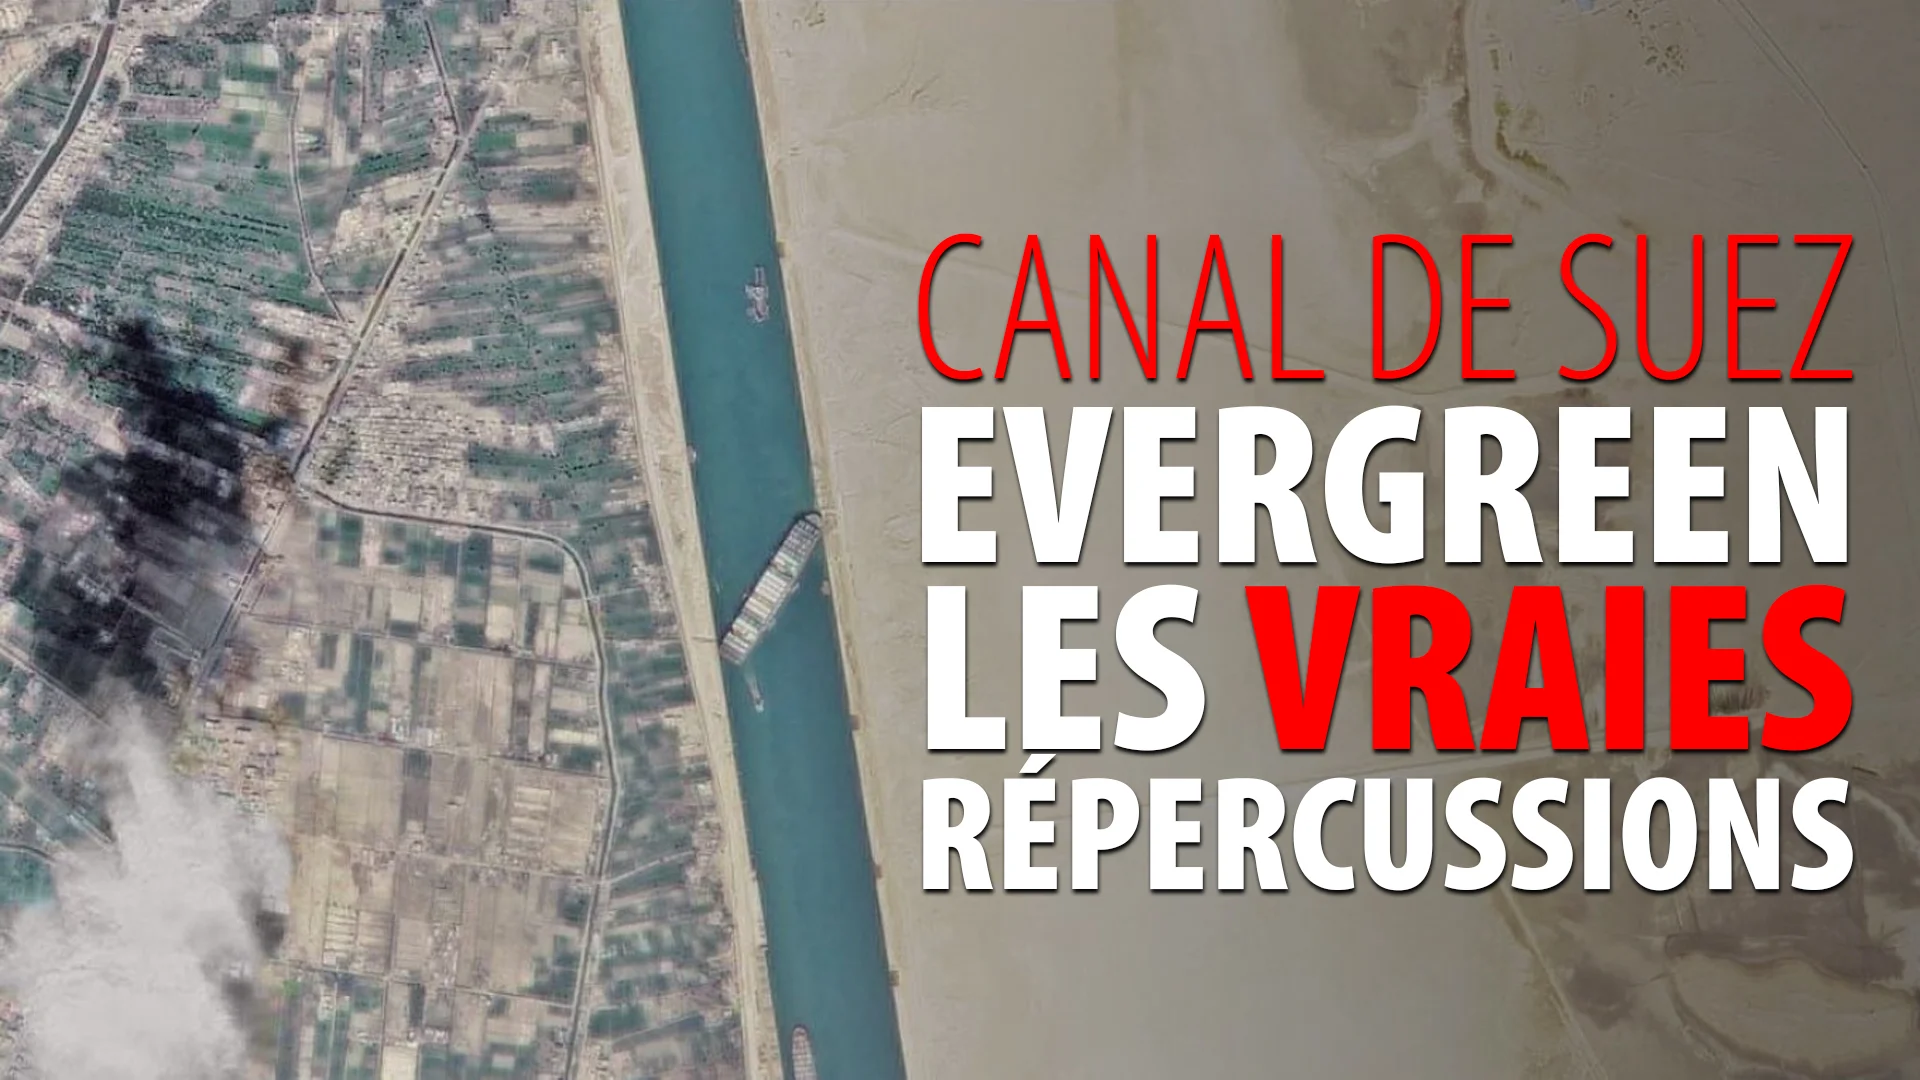 CANAL DE SUEZ – EVERGREEN – LES VRAIES RÉPERCUSSIONS